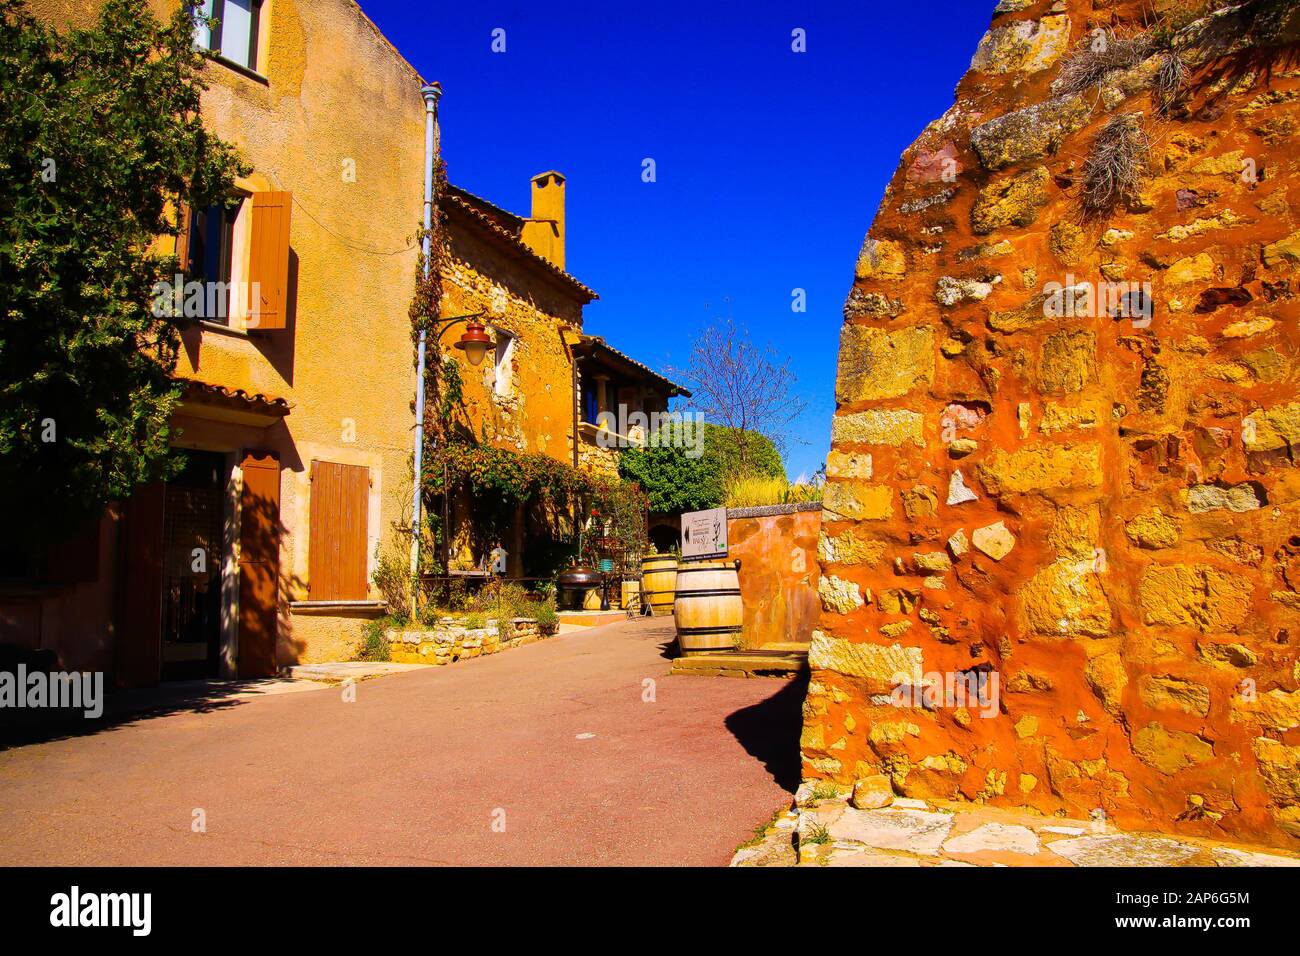 Roussillon En Provence, France - 2 Octobre. 2019: Vue au-delà de la forteresse jaune ocre mur de pierre naturel sur la rue avec des maisons méditerranéennes françaises agai Banque D'Images